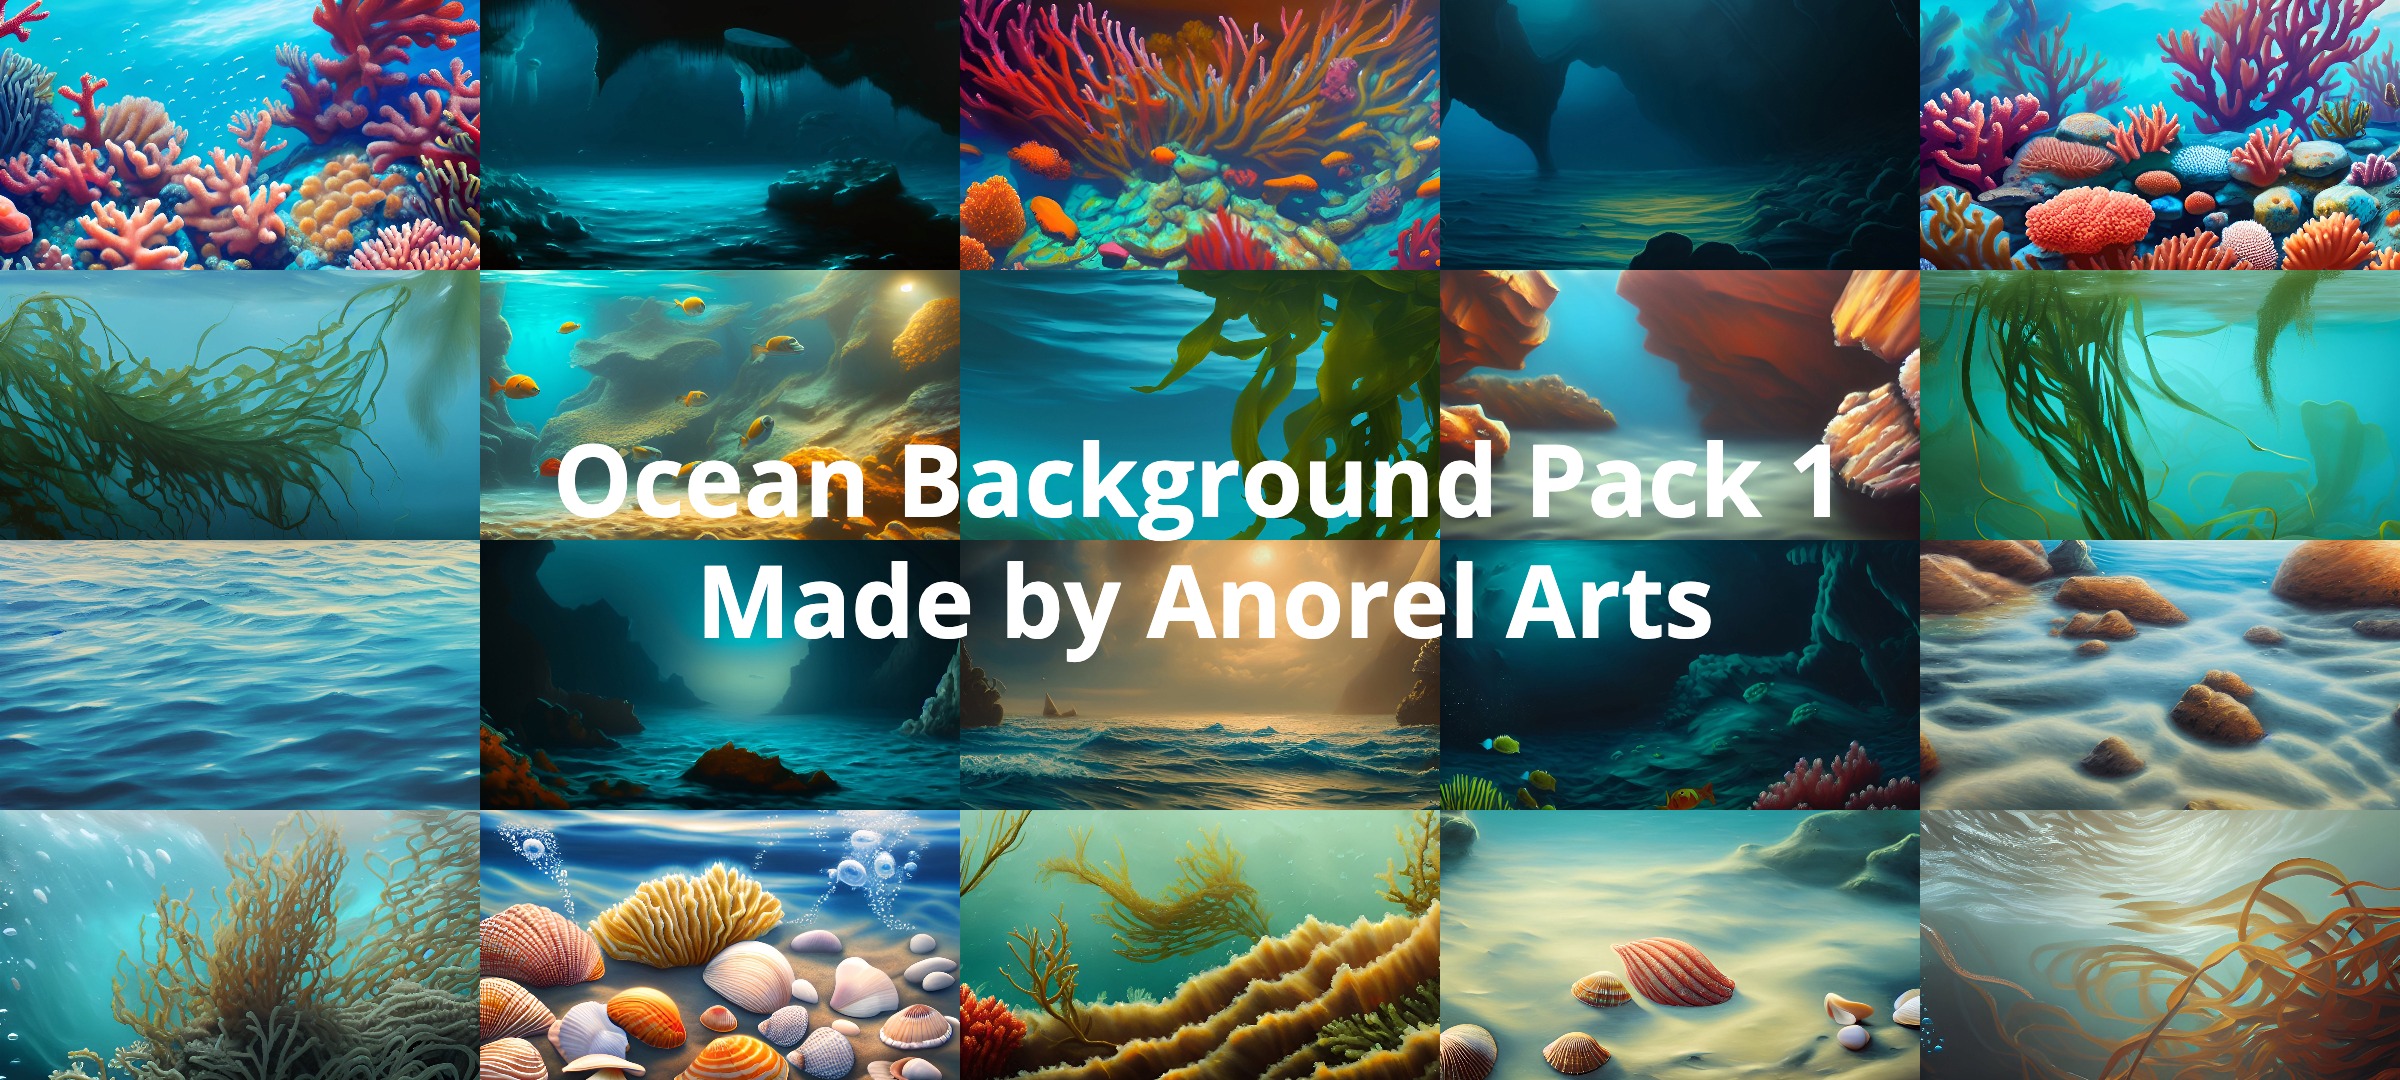 Ocean Background Pack 1